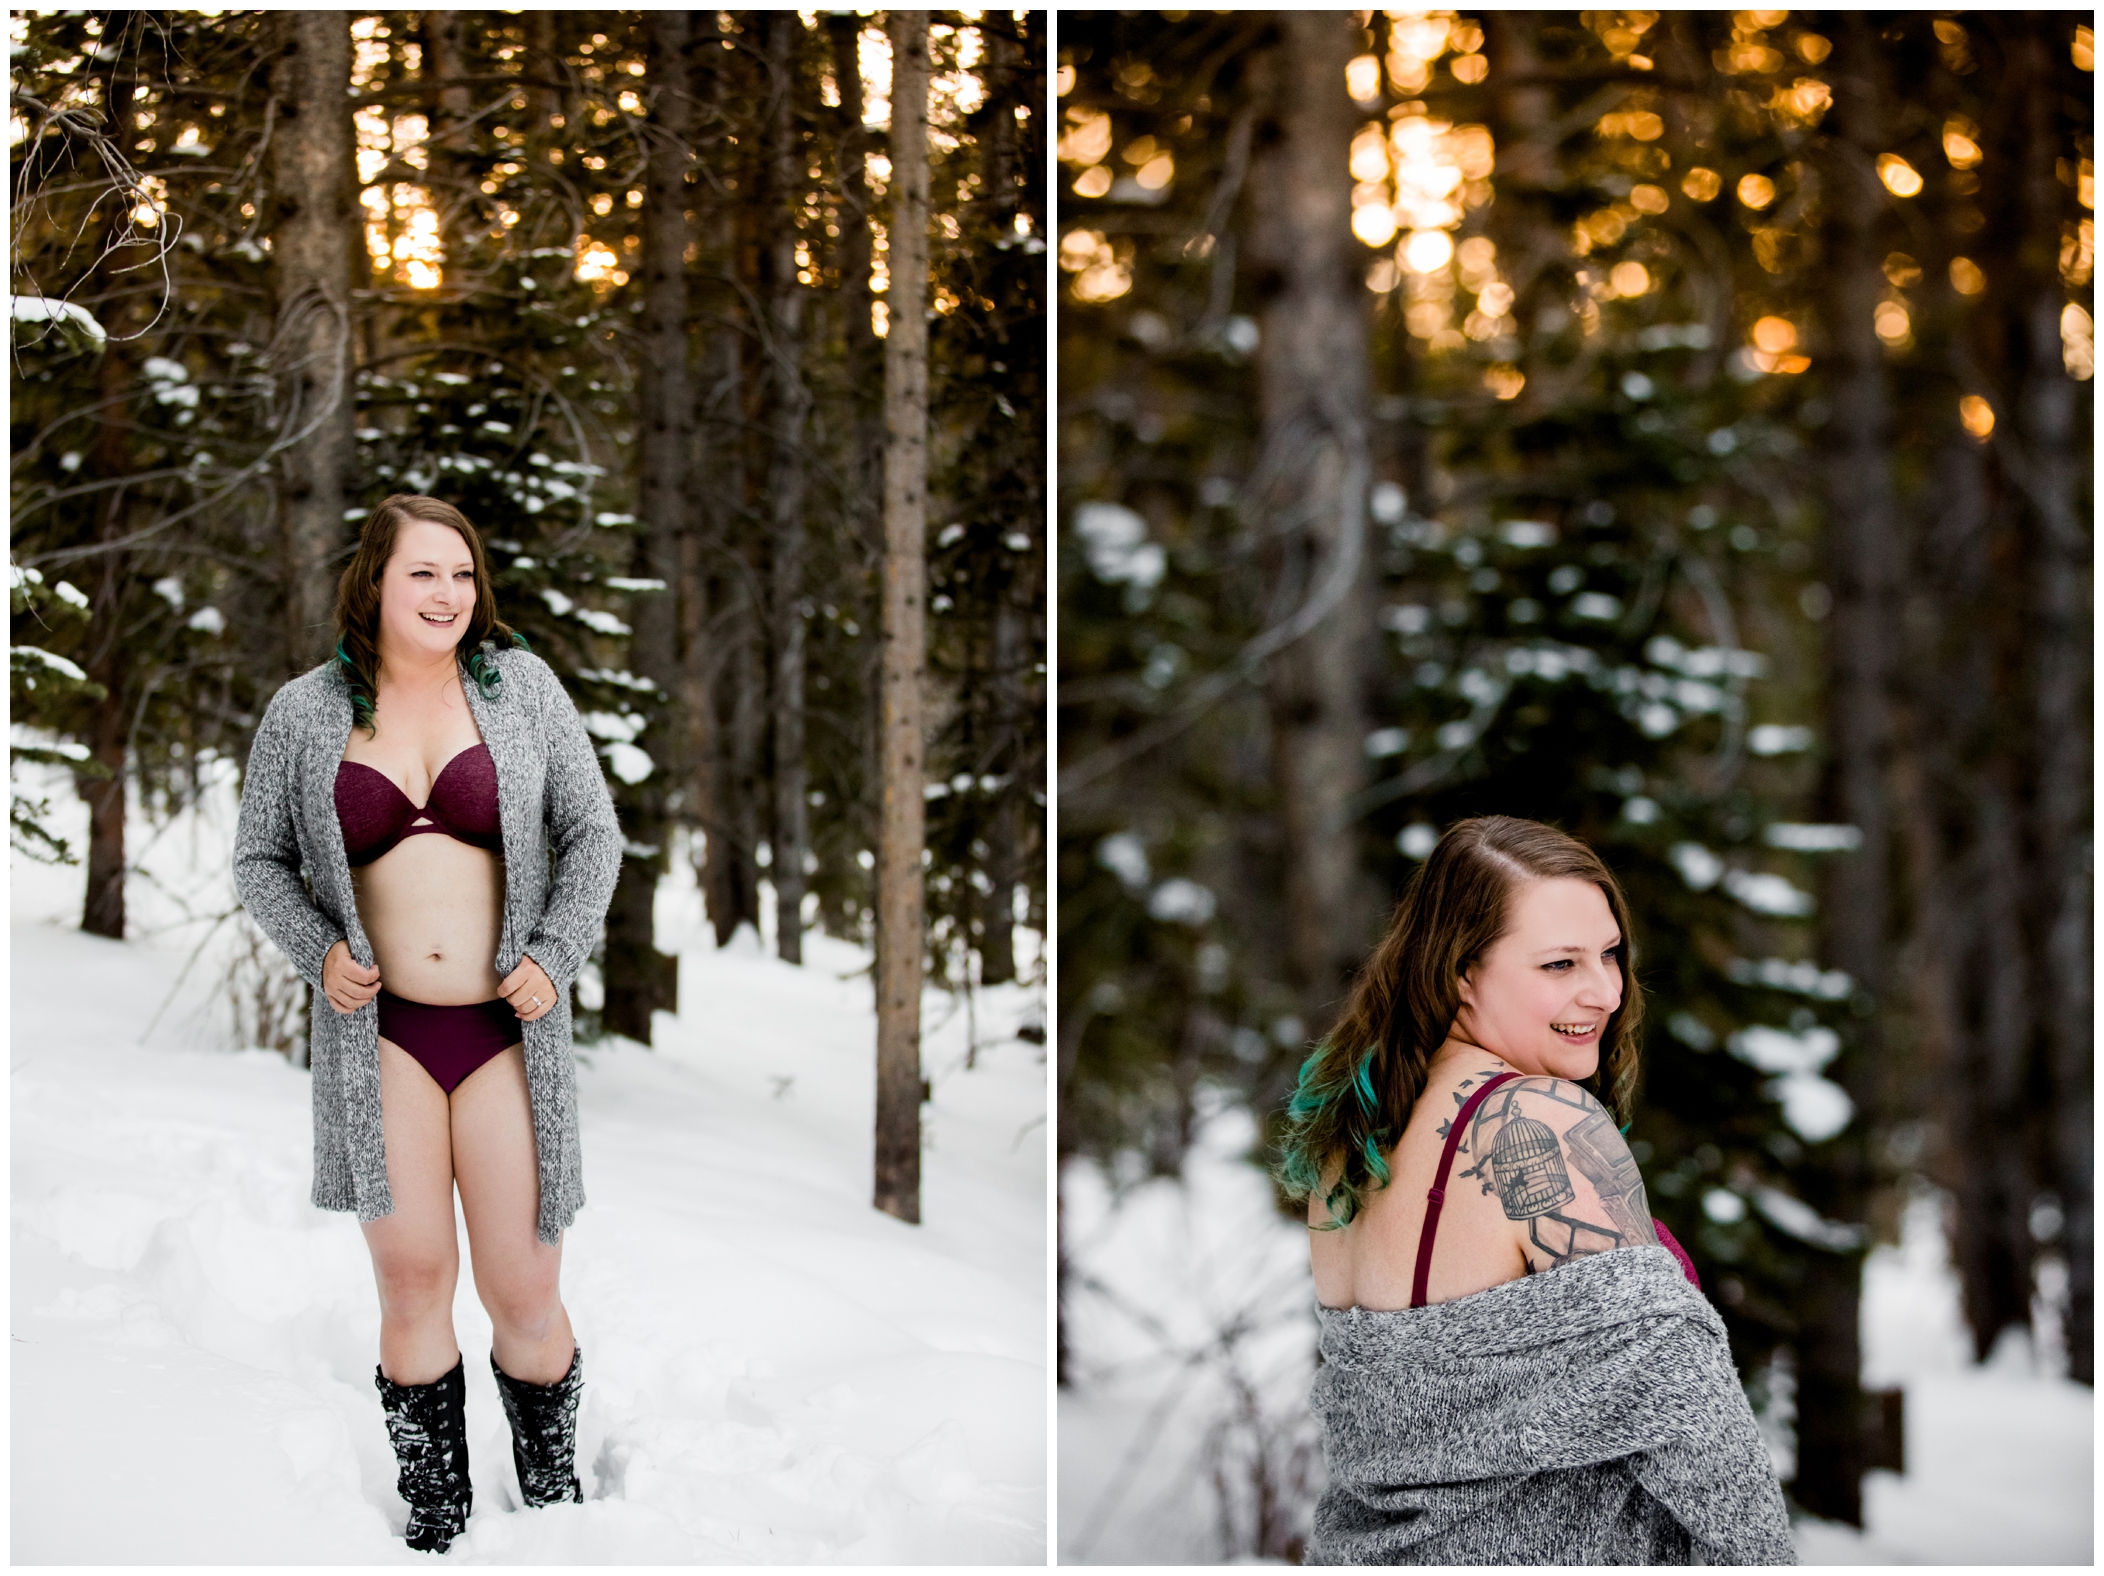 Breckenridge Colorado winter boudoir photos in the snow